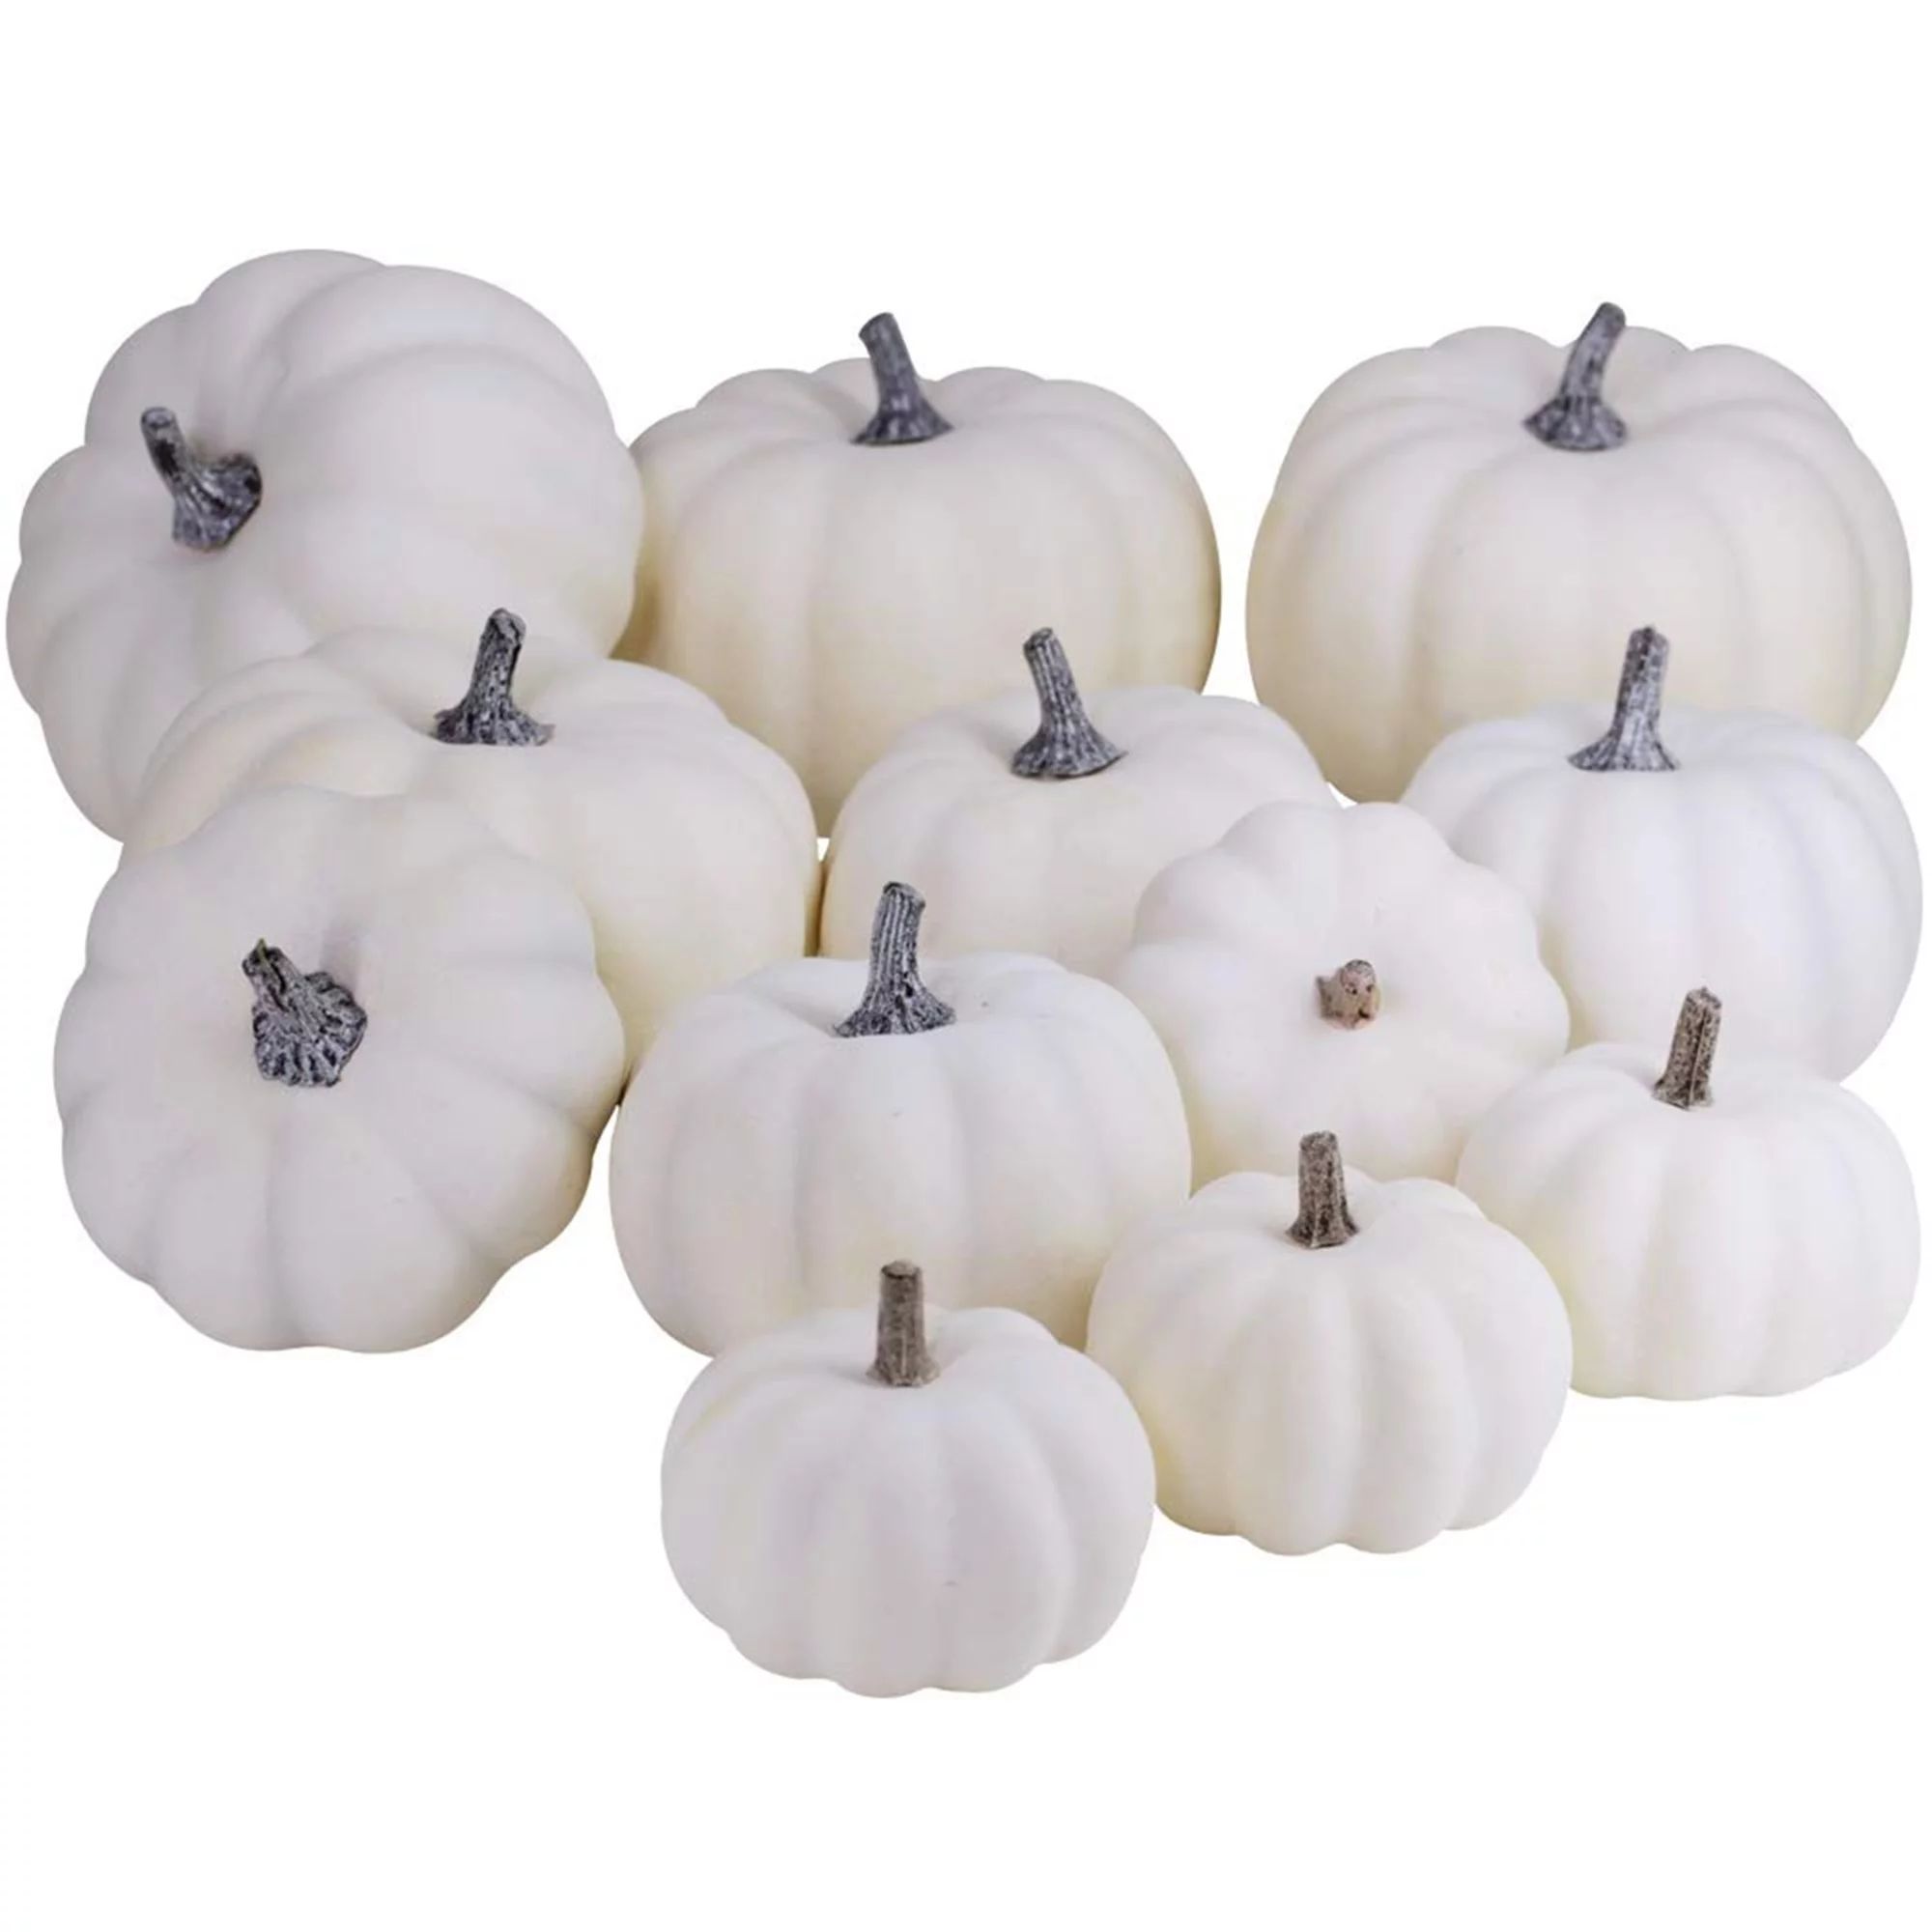 12 Pcs Artificial White Pumpkins Bulk Faux Pumpkins for Halloween Decoration | Walmart (US)